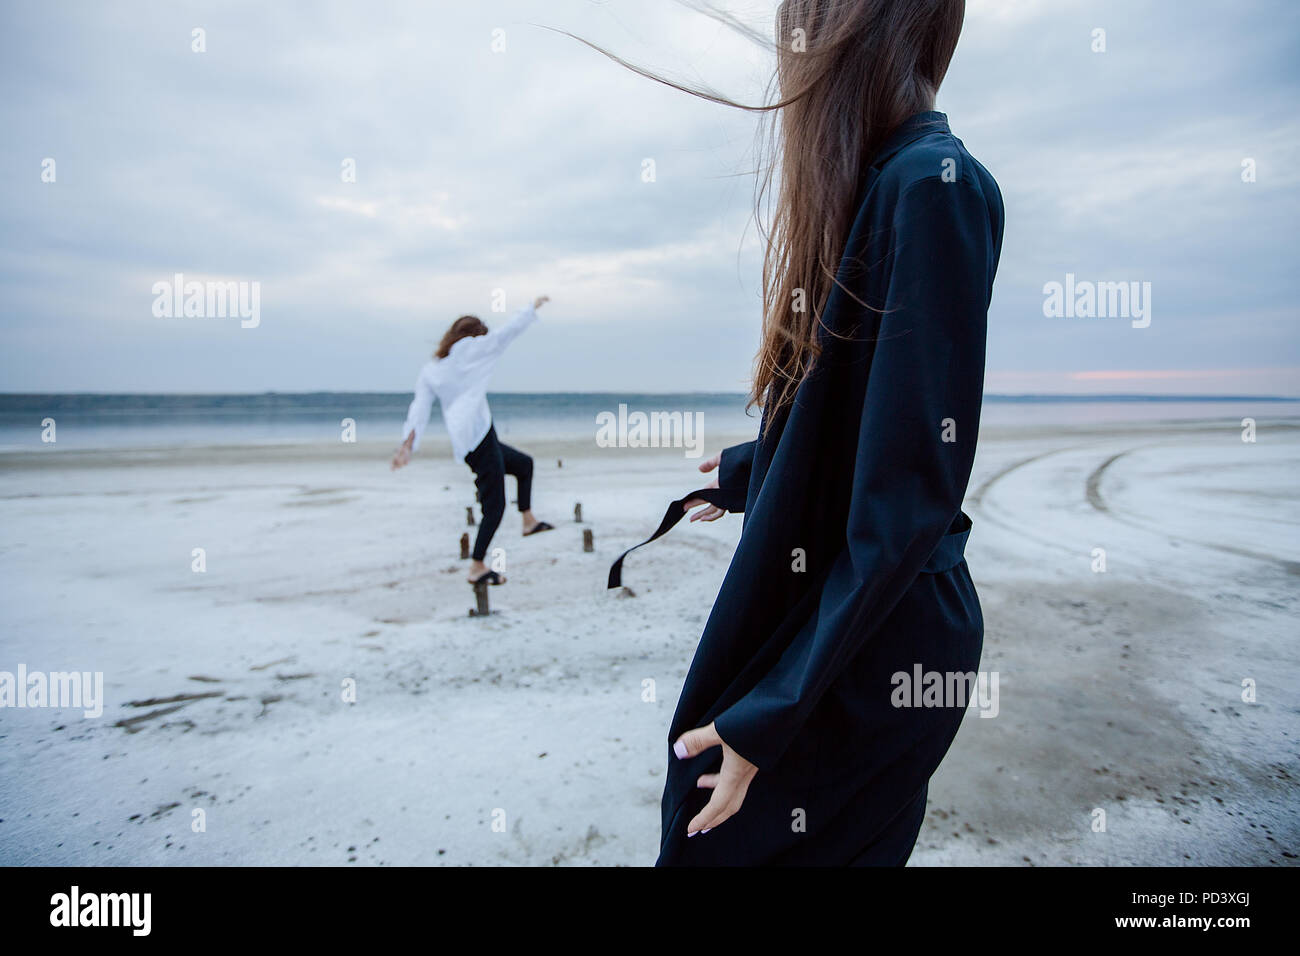 Women balancing on wooden stumps on beach, Odessa, Ukraine Stock Photo